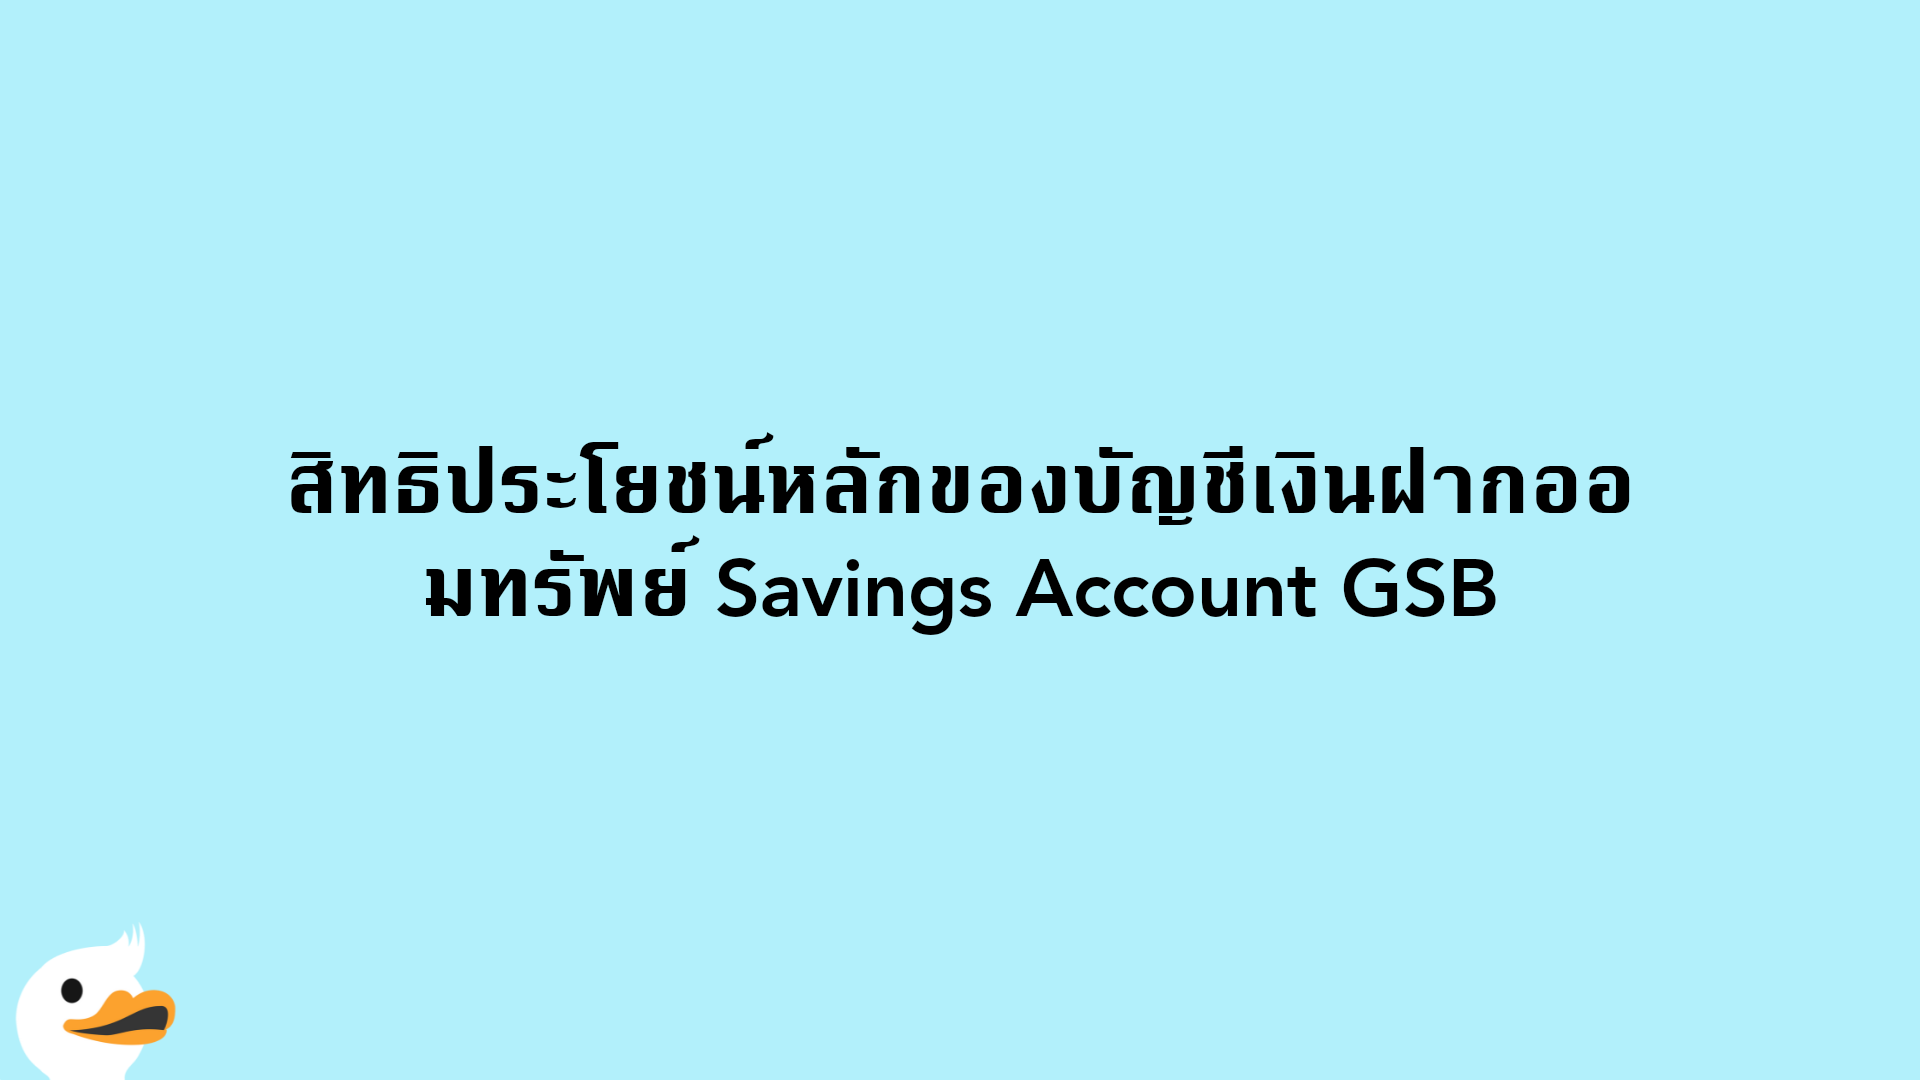 สิทธิประโยชน์หลักของบัญชีเงินฝากออมทรัพย์ Savings Account GSB